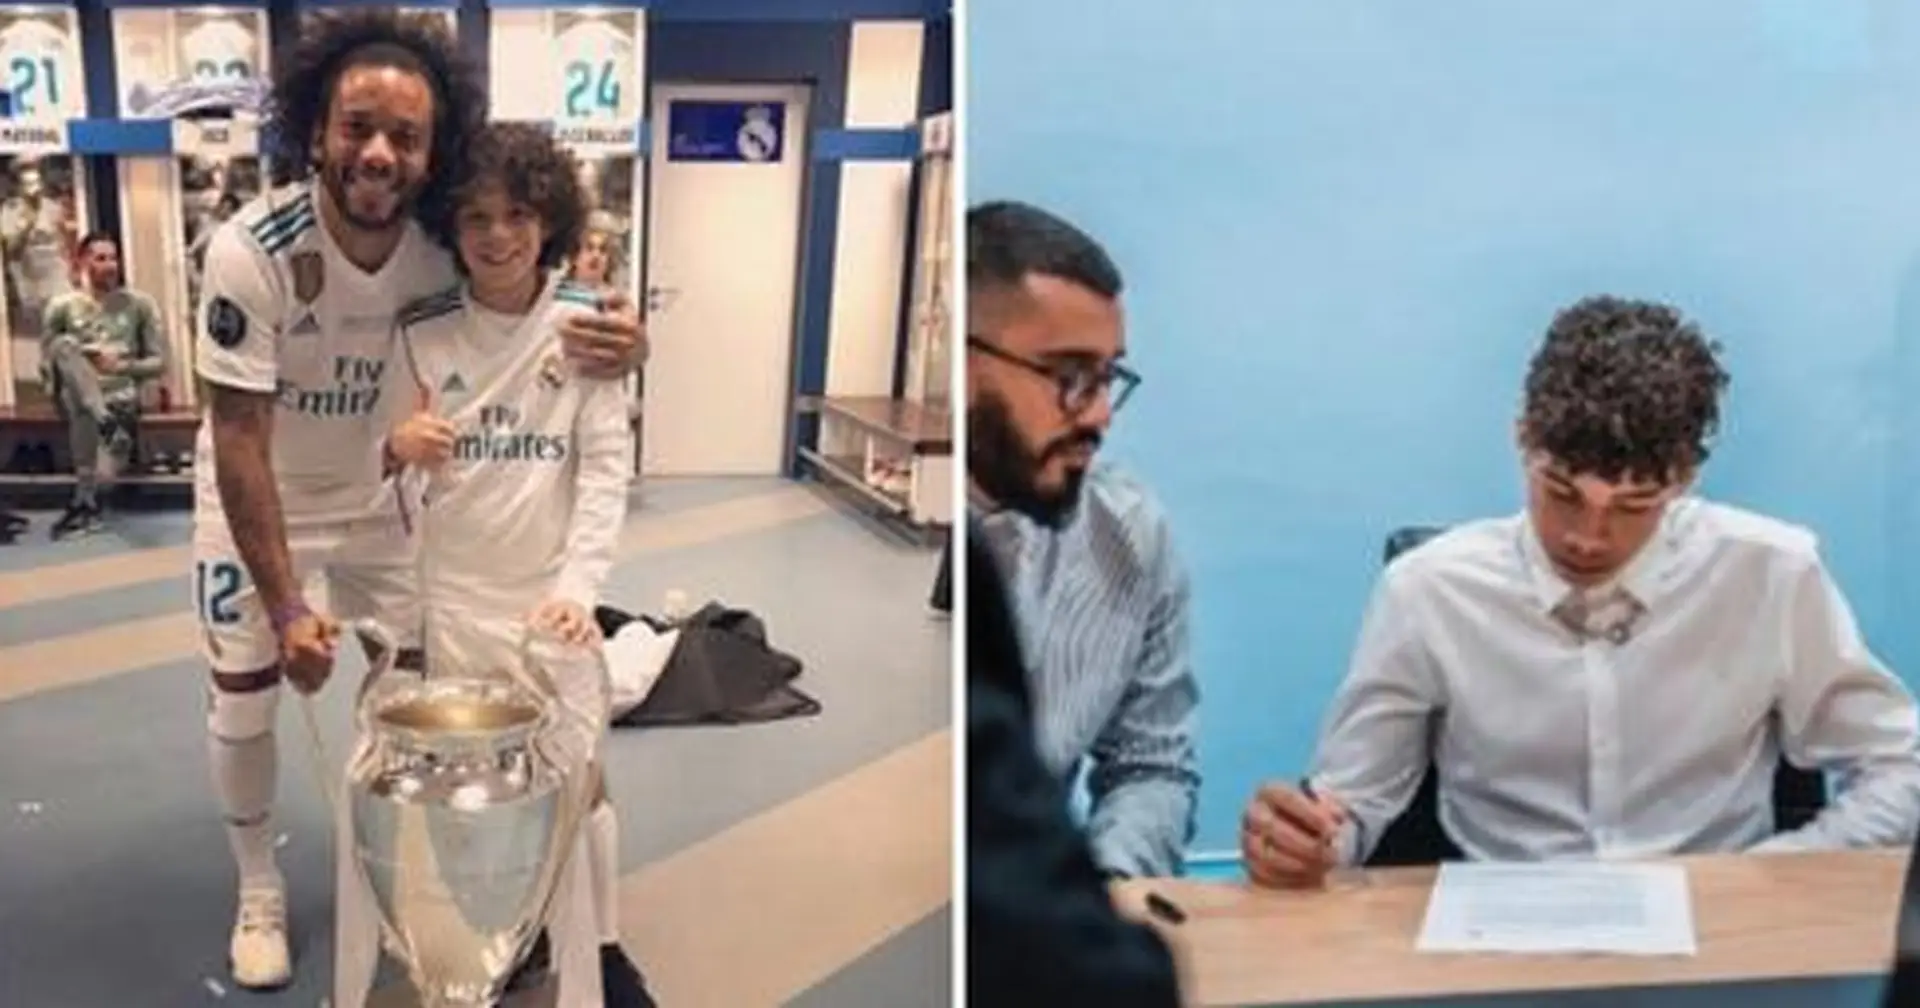 Sohn von Marcelo hat seinen ersten offiziellen Vertrag unterzeichnet: Mit welchem Verein? 😏